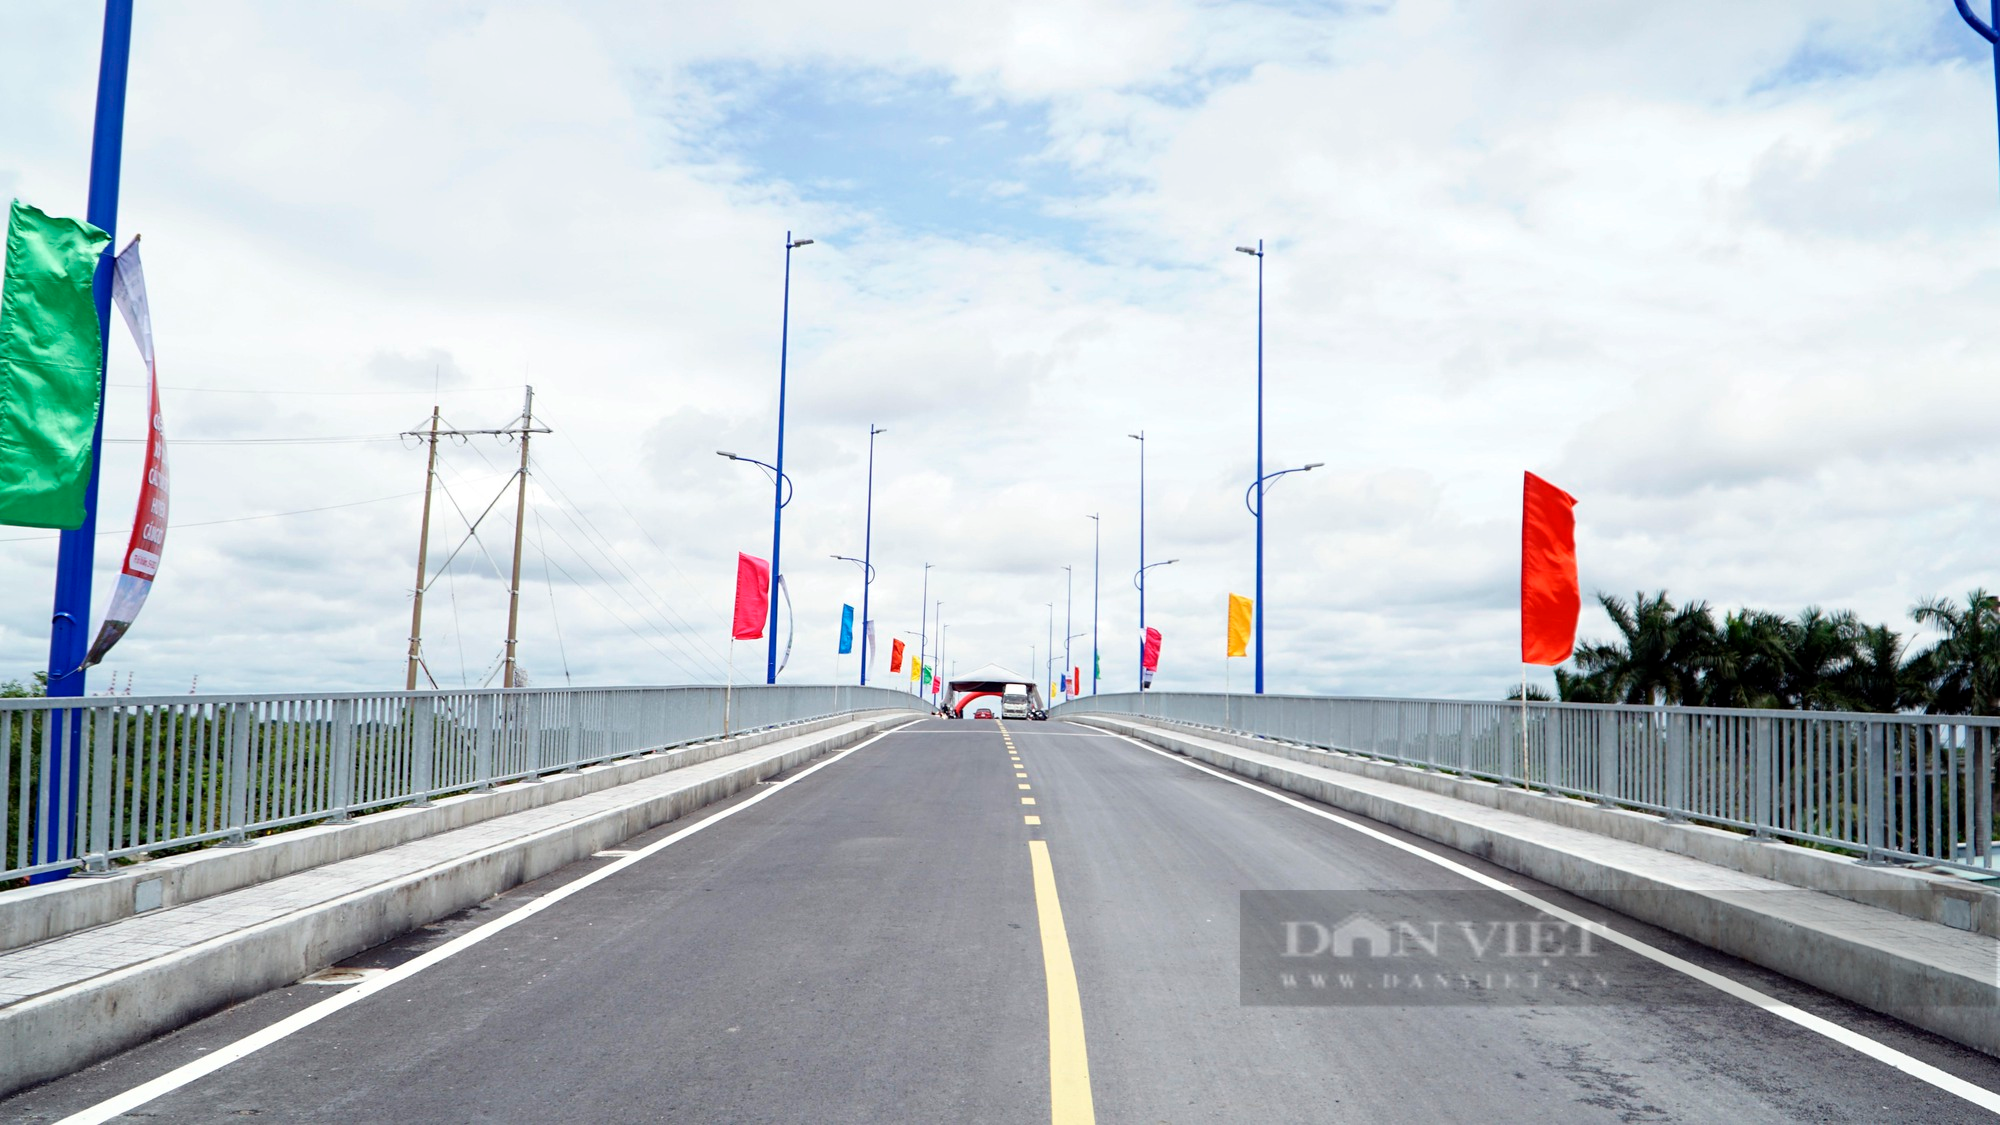 Diện mạo cây cầu hơn 340 tỷ đồng tại huyện Cần Giờ trong ngày thông xe - Ảnh 3.